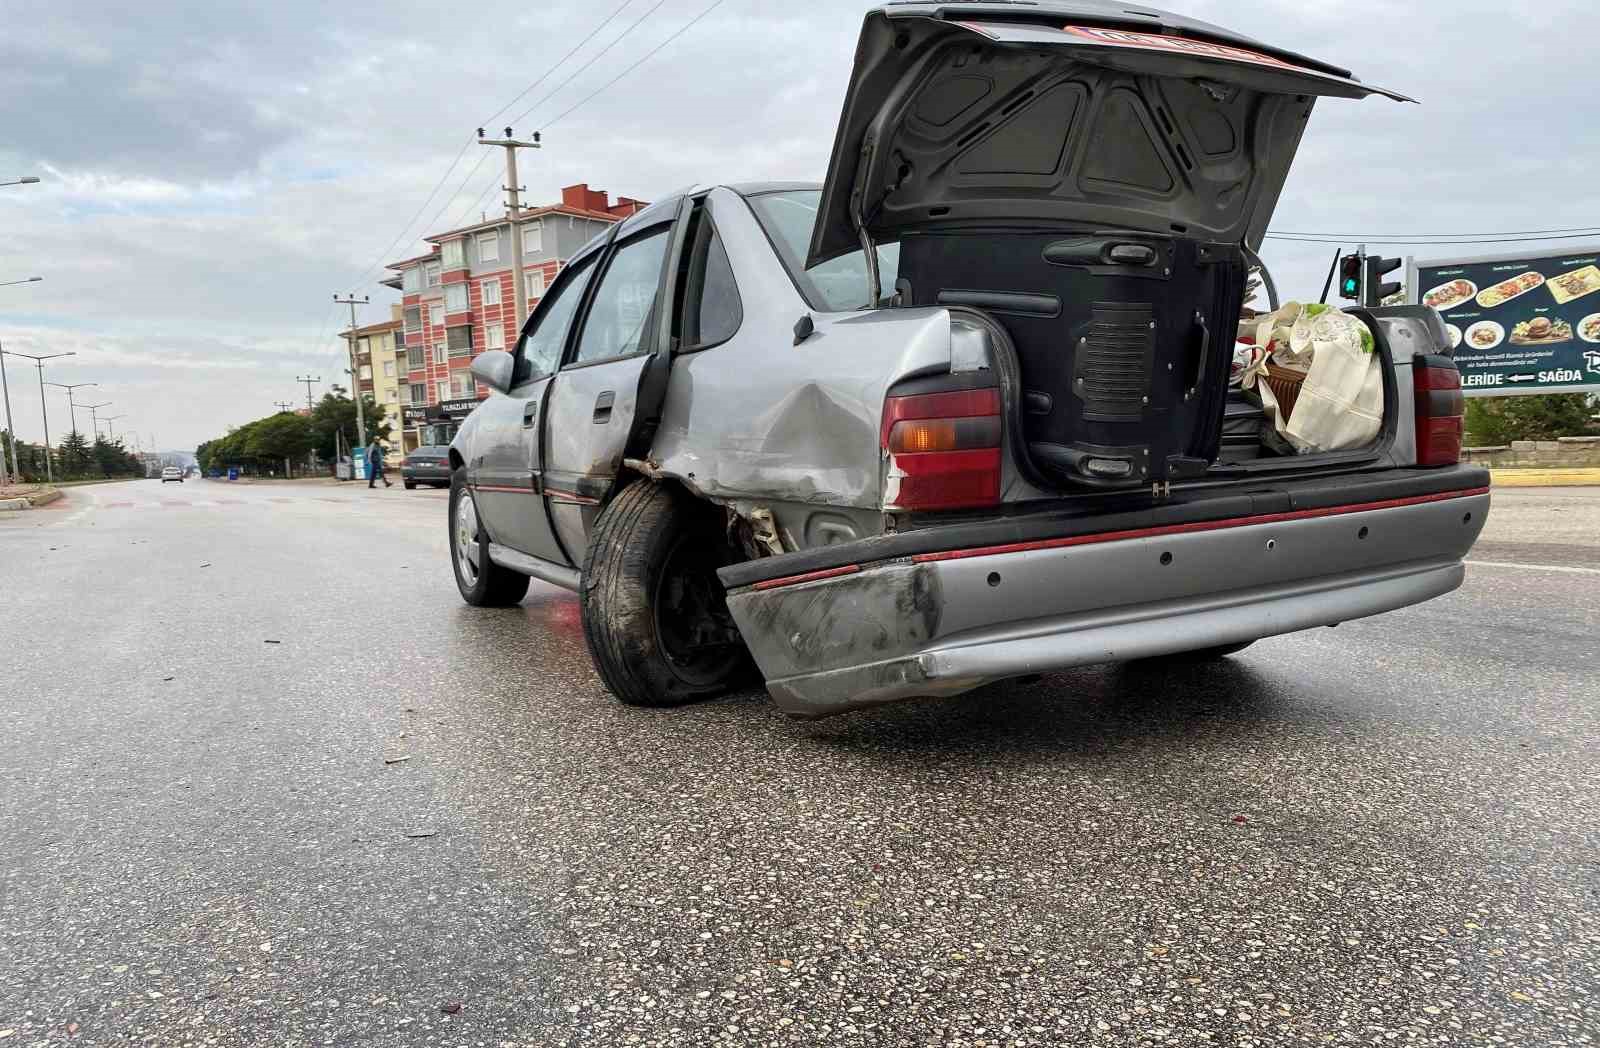 Konya'da kaza: Lüks araç kırmızı ışıkta bekleyen otomobile çarptı: 3 yaralı